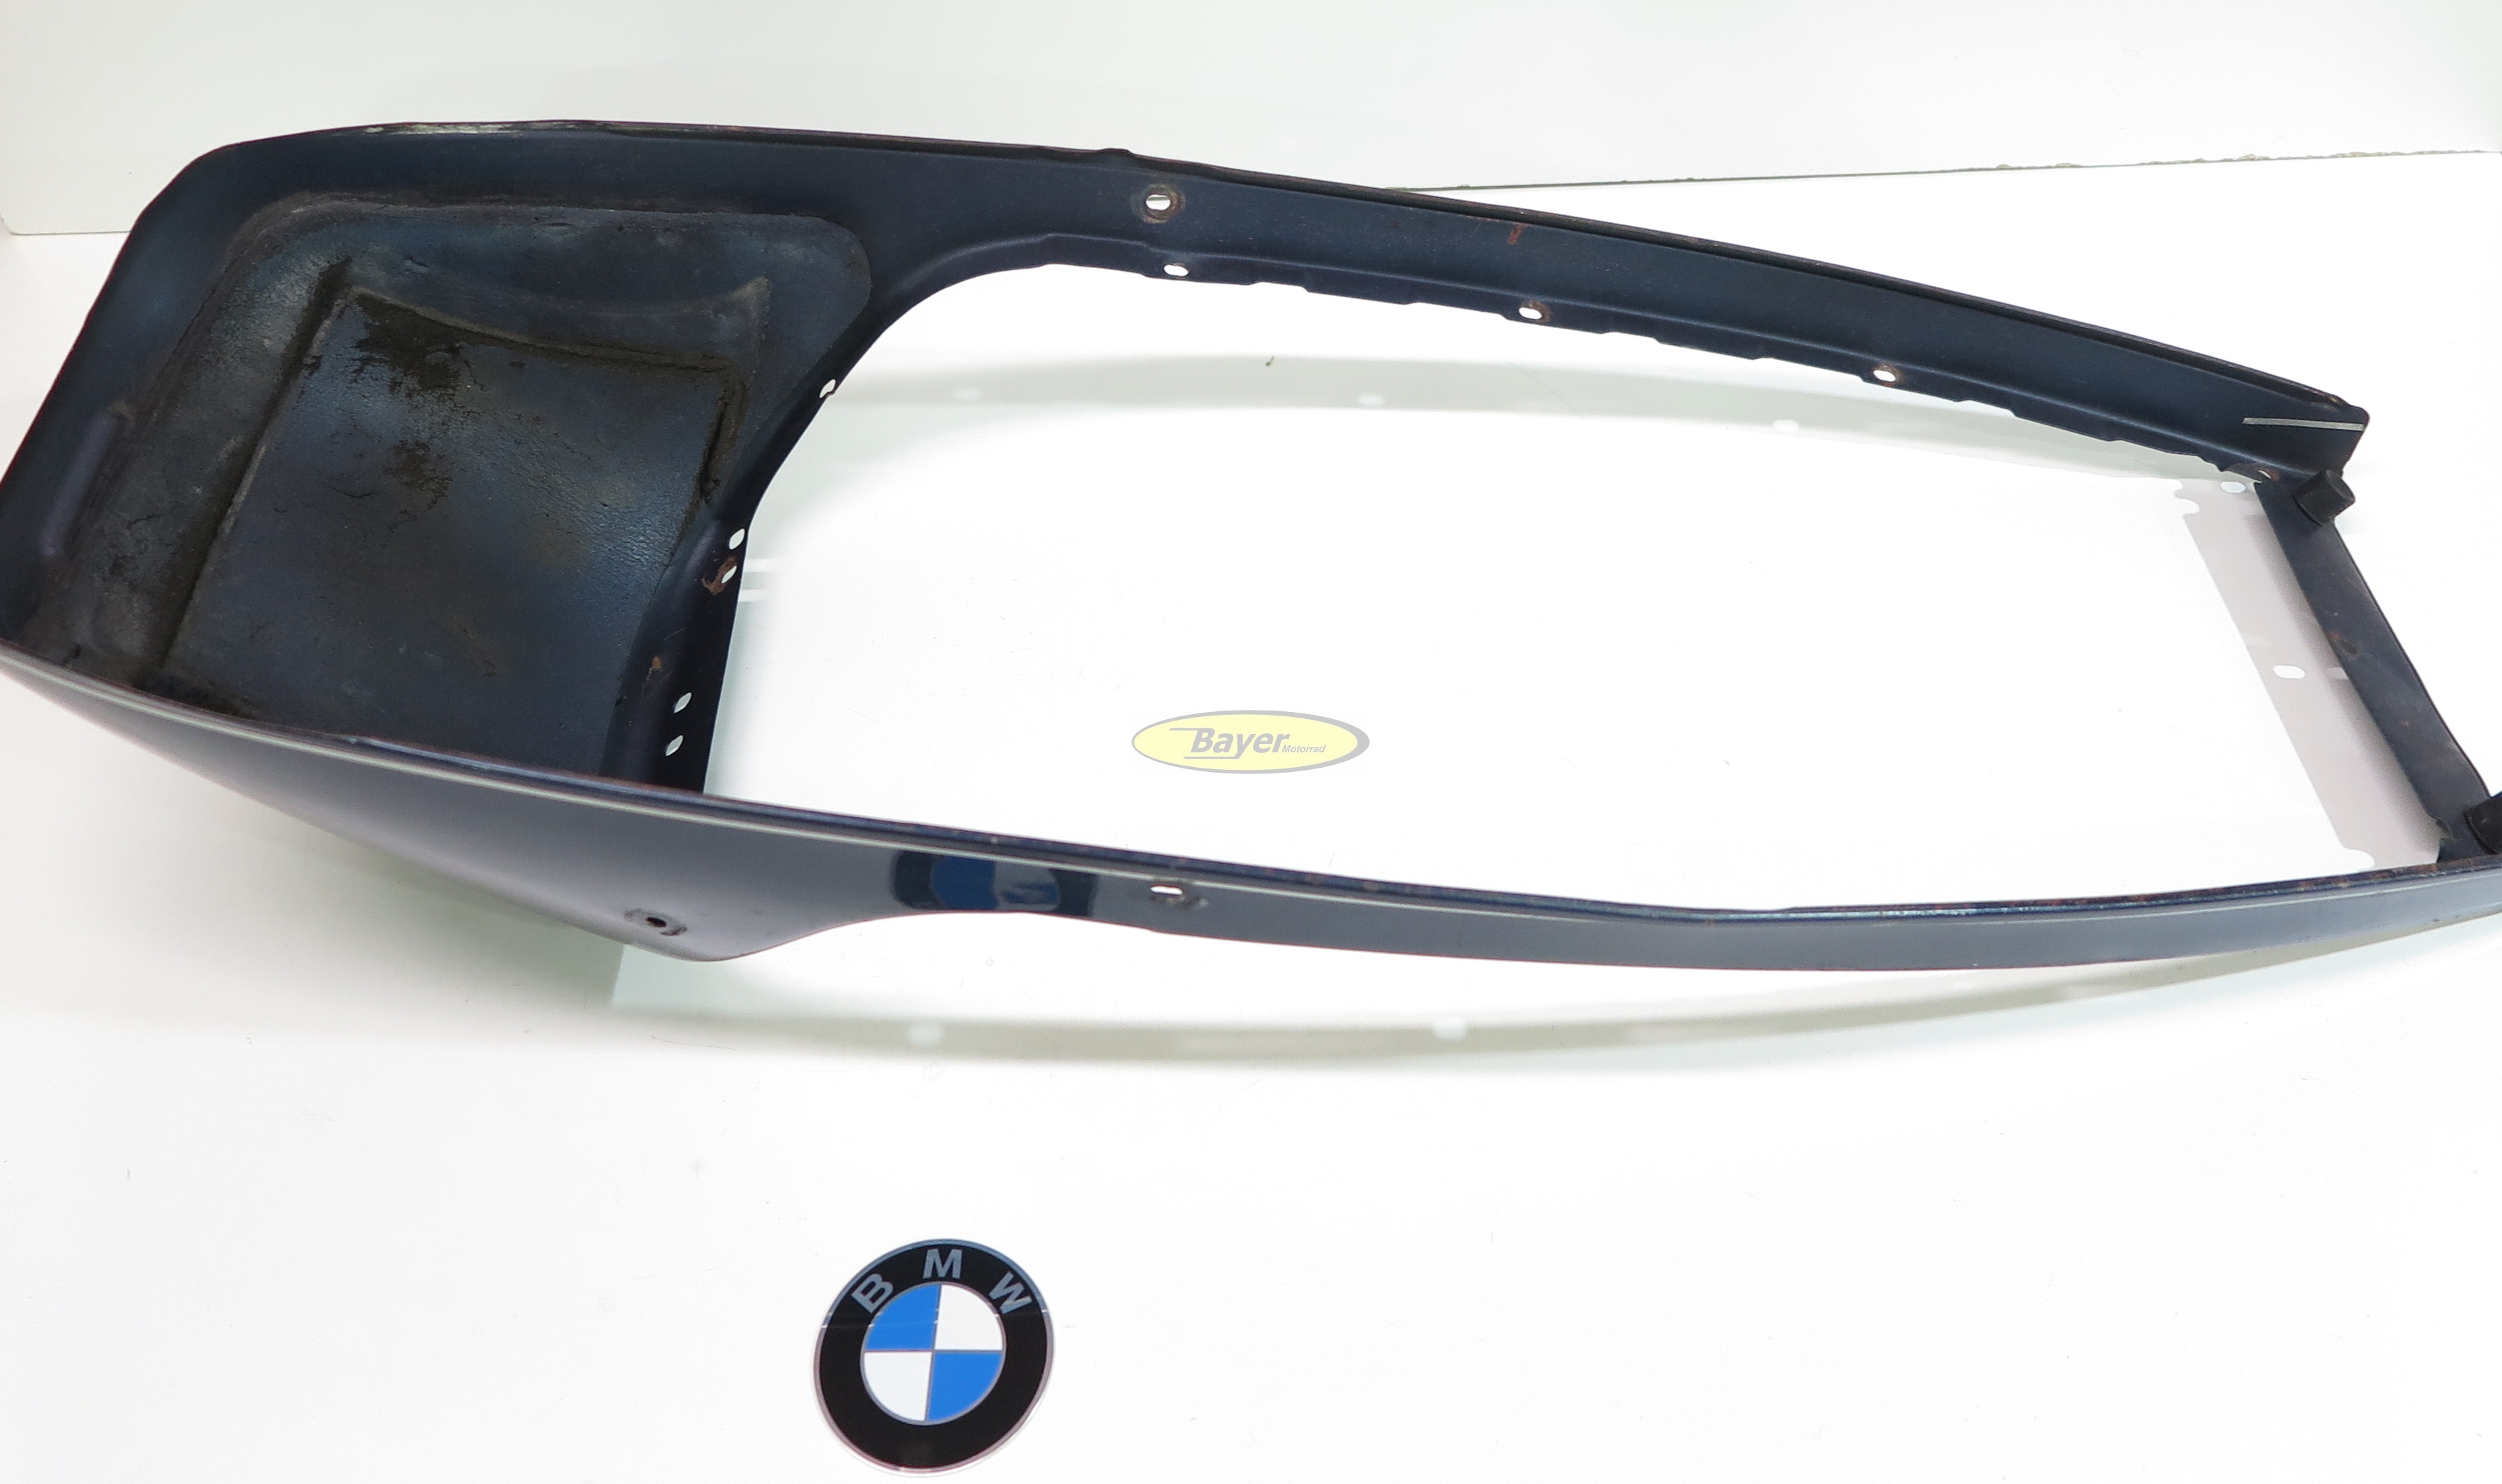 Cadre de siège BMW, occasion, peinture 544 Pacific blue, modèles BMW R2V  Boxer